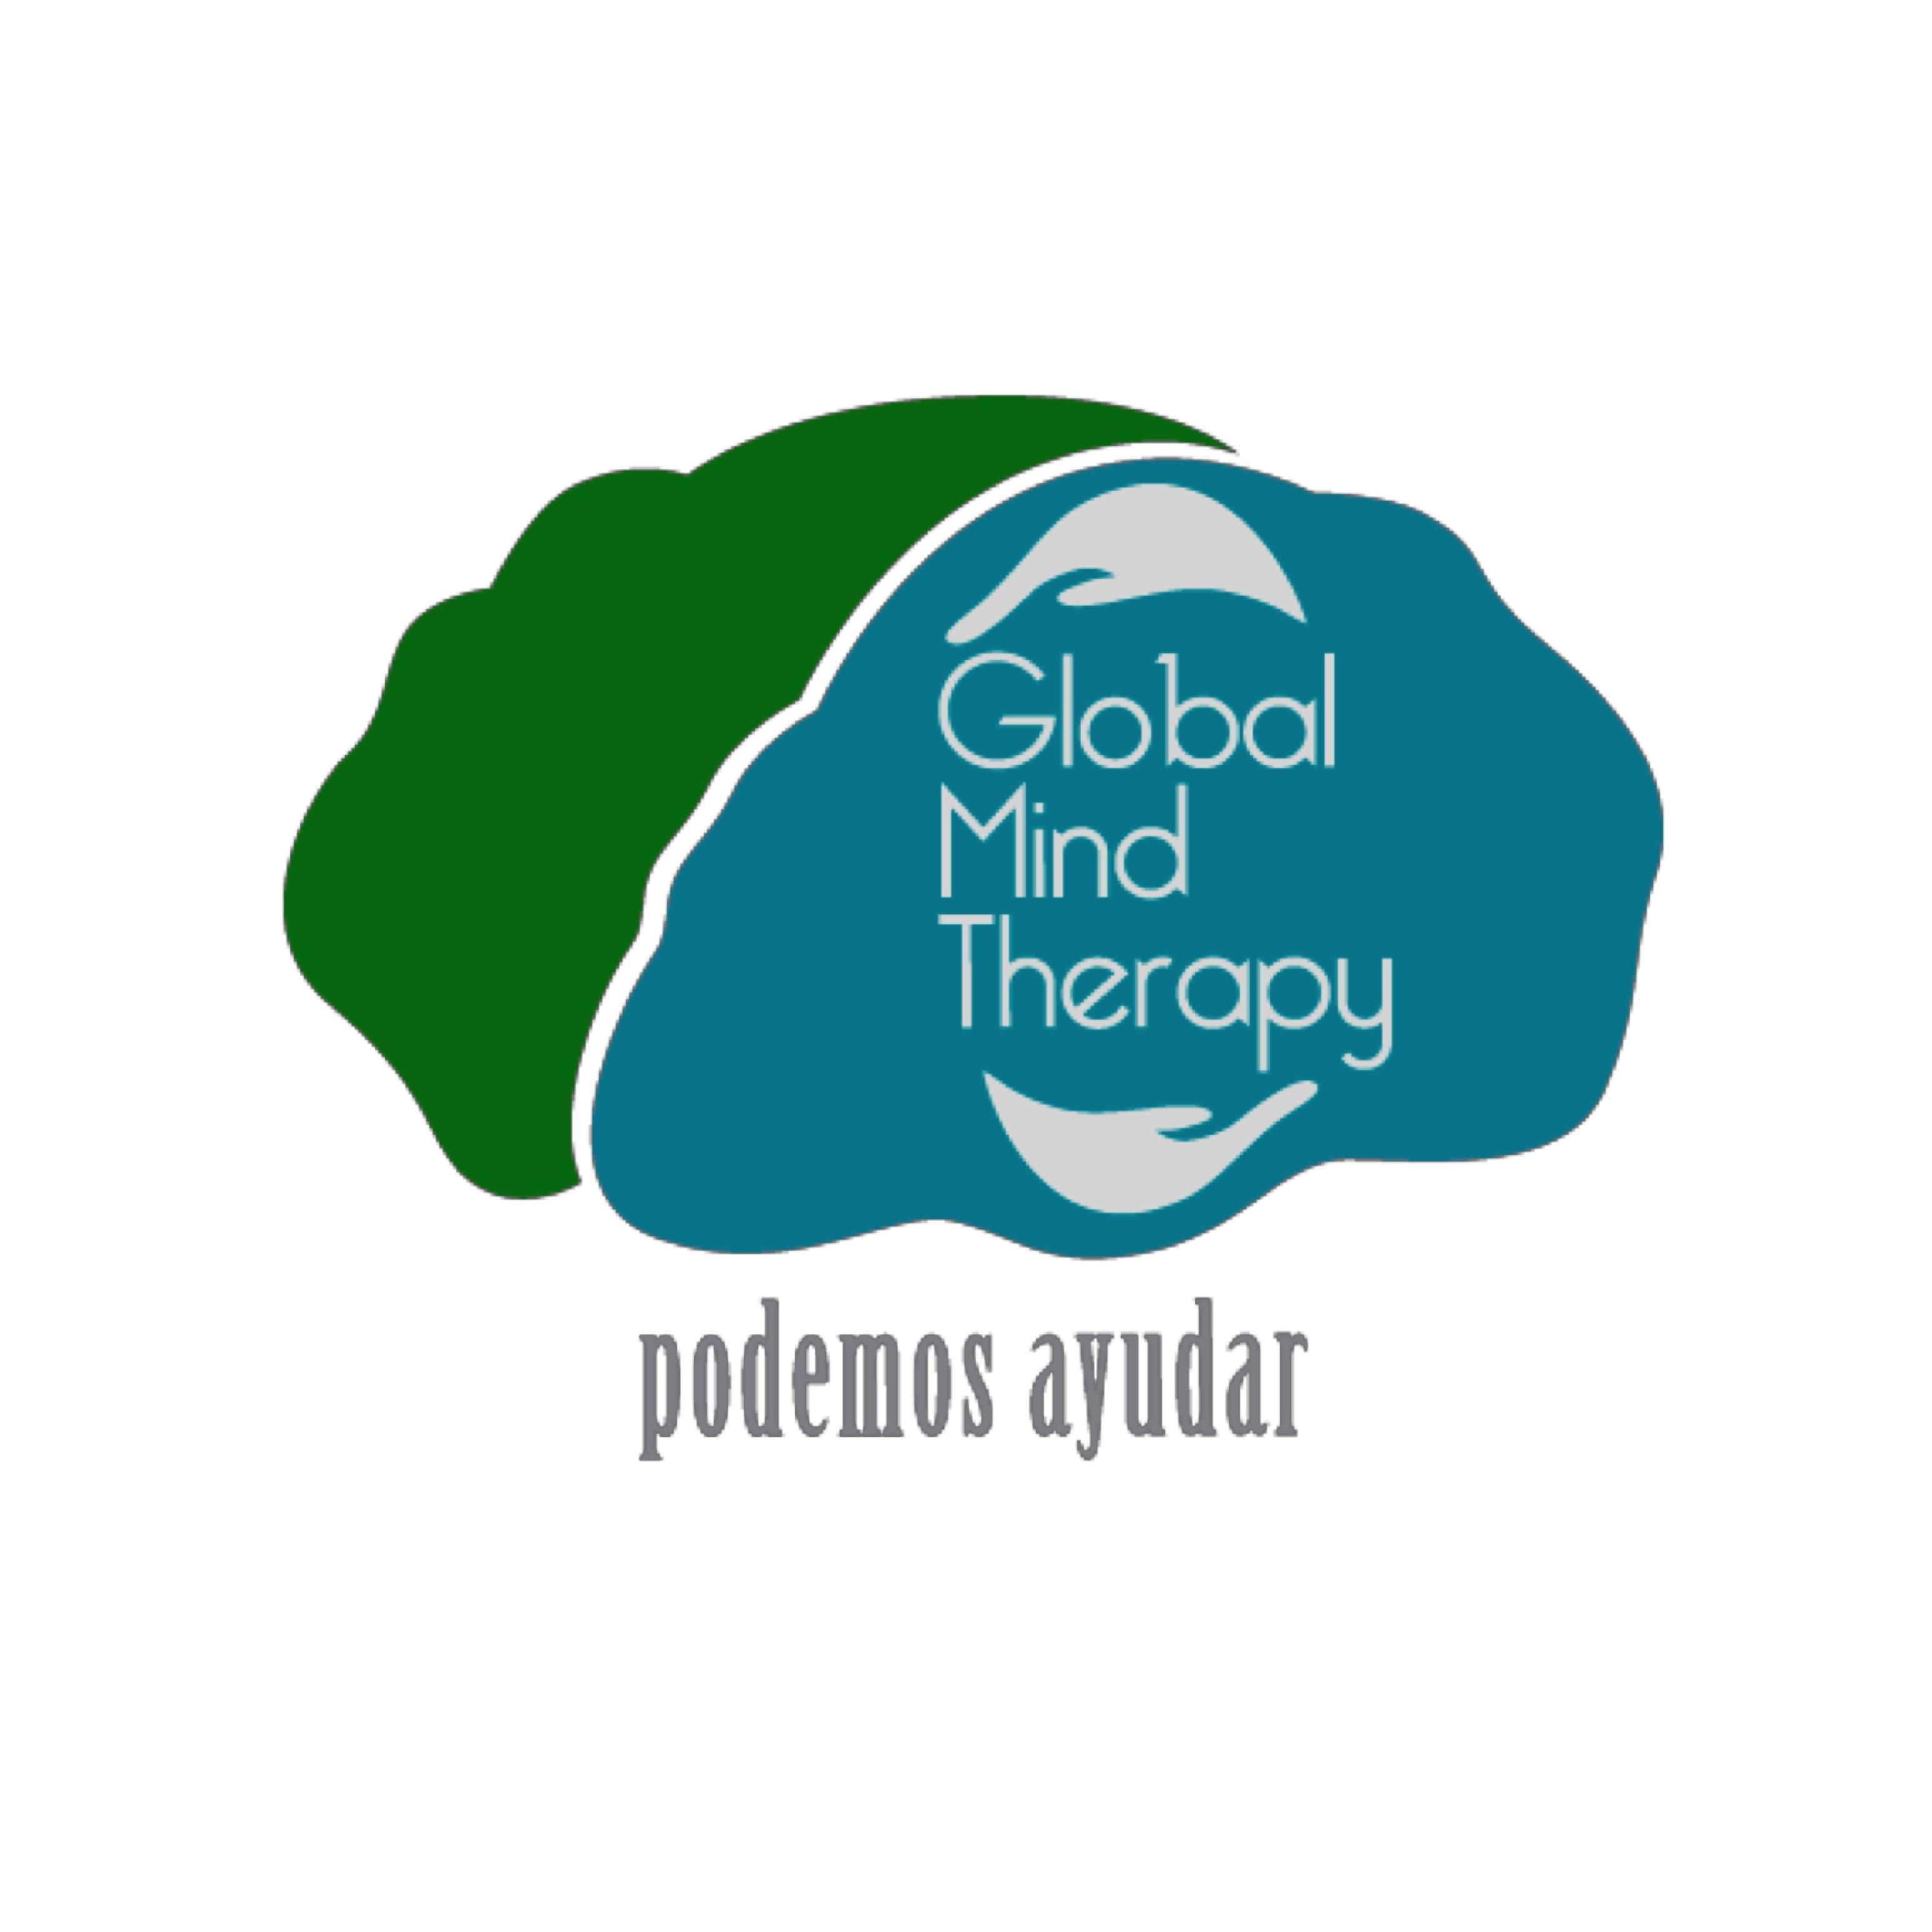 Global Mind Therapy es una consultora de psicología social orientada al análisis e intervención de grupos, instituciones y comunidades. ¡Podemos ayudar!